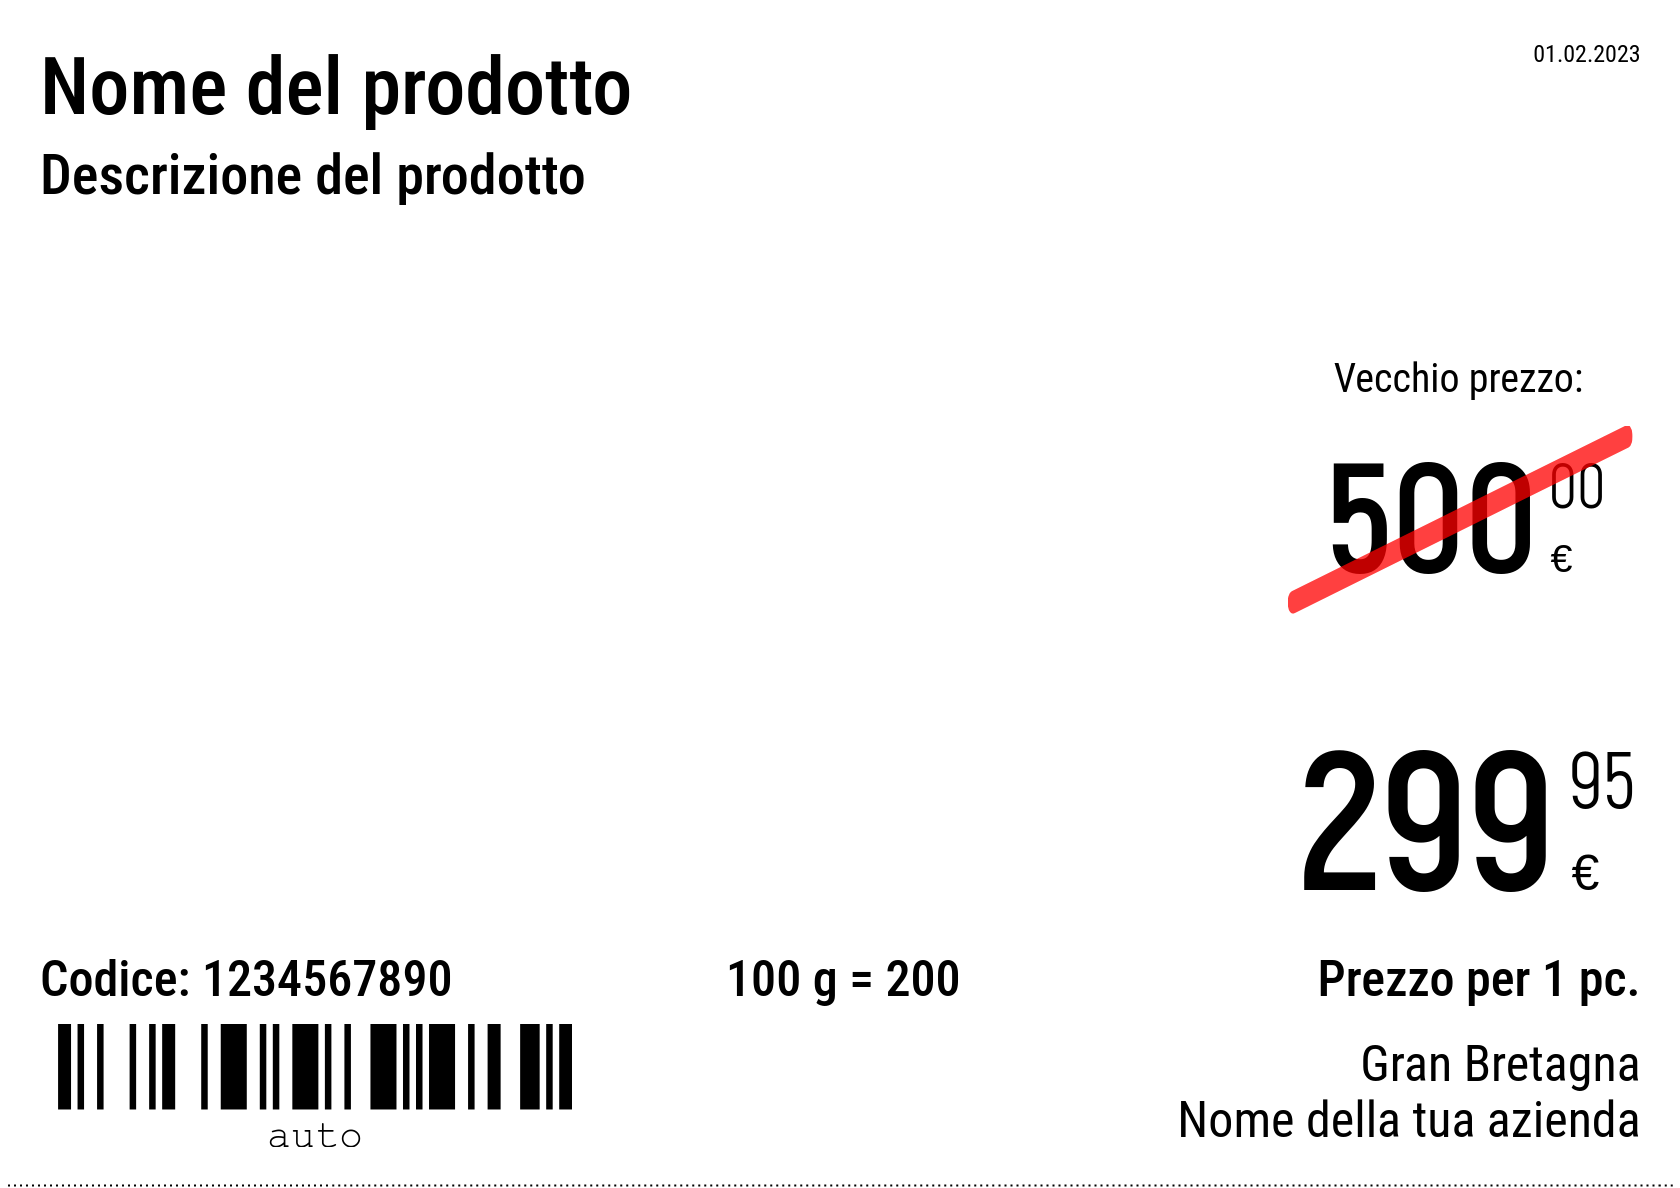 Prezzo Nuovo / A5 (mezzo foglio A4) / Promozionale